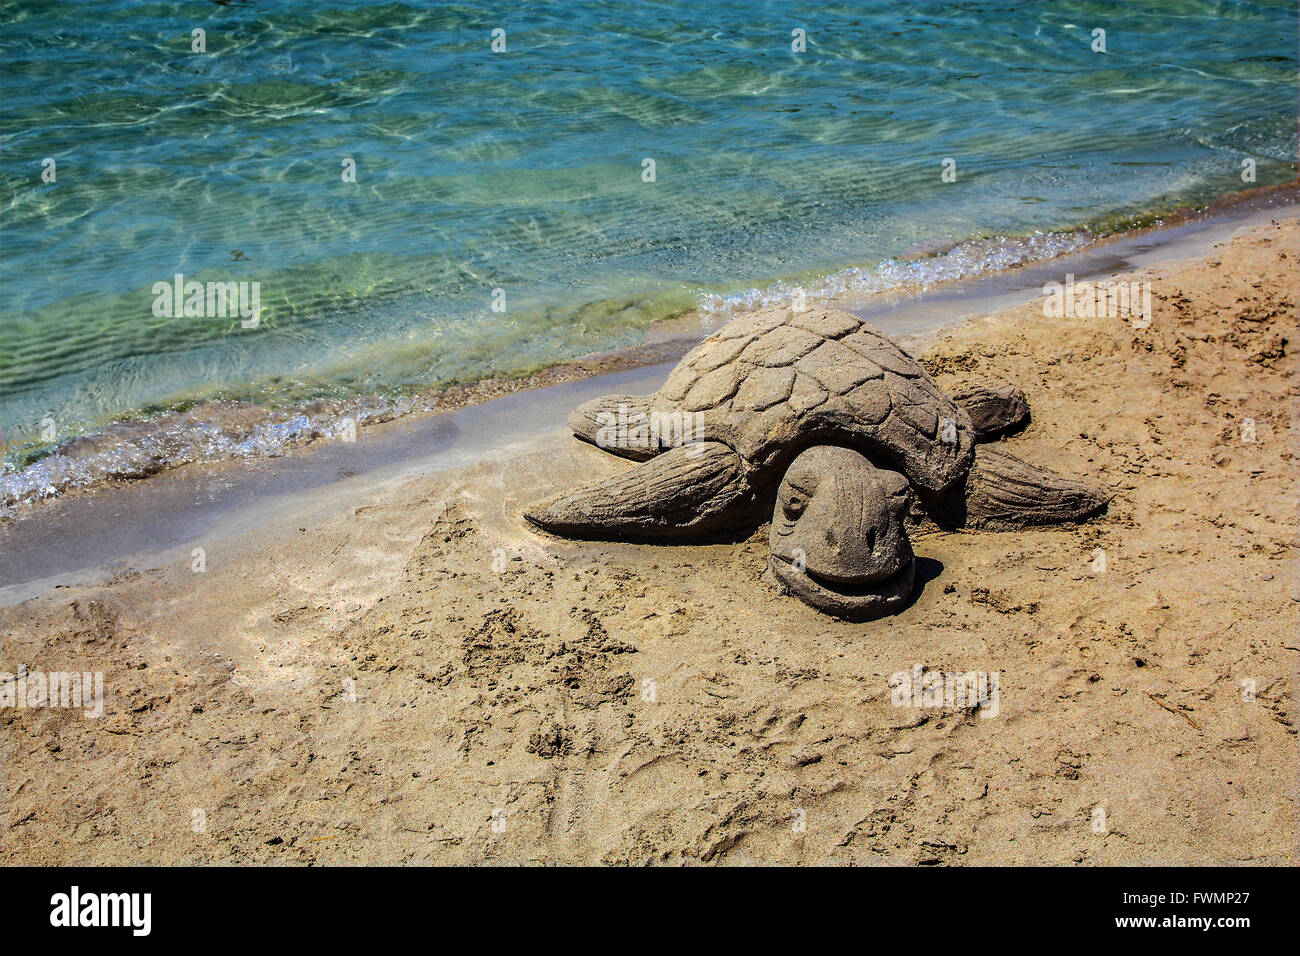 Eine Schildkröte aus Sand, am Strand auf Kreta, Griechenland, Europa Stockfoto